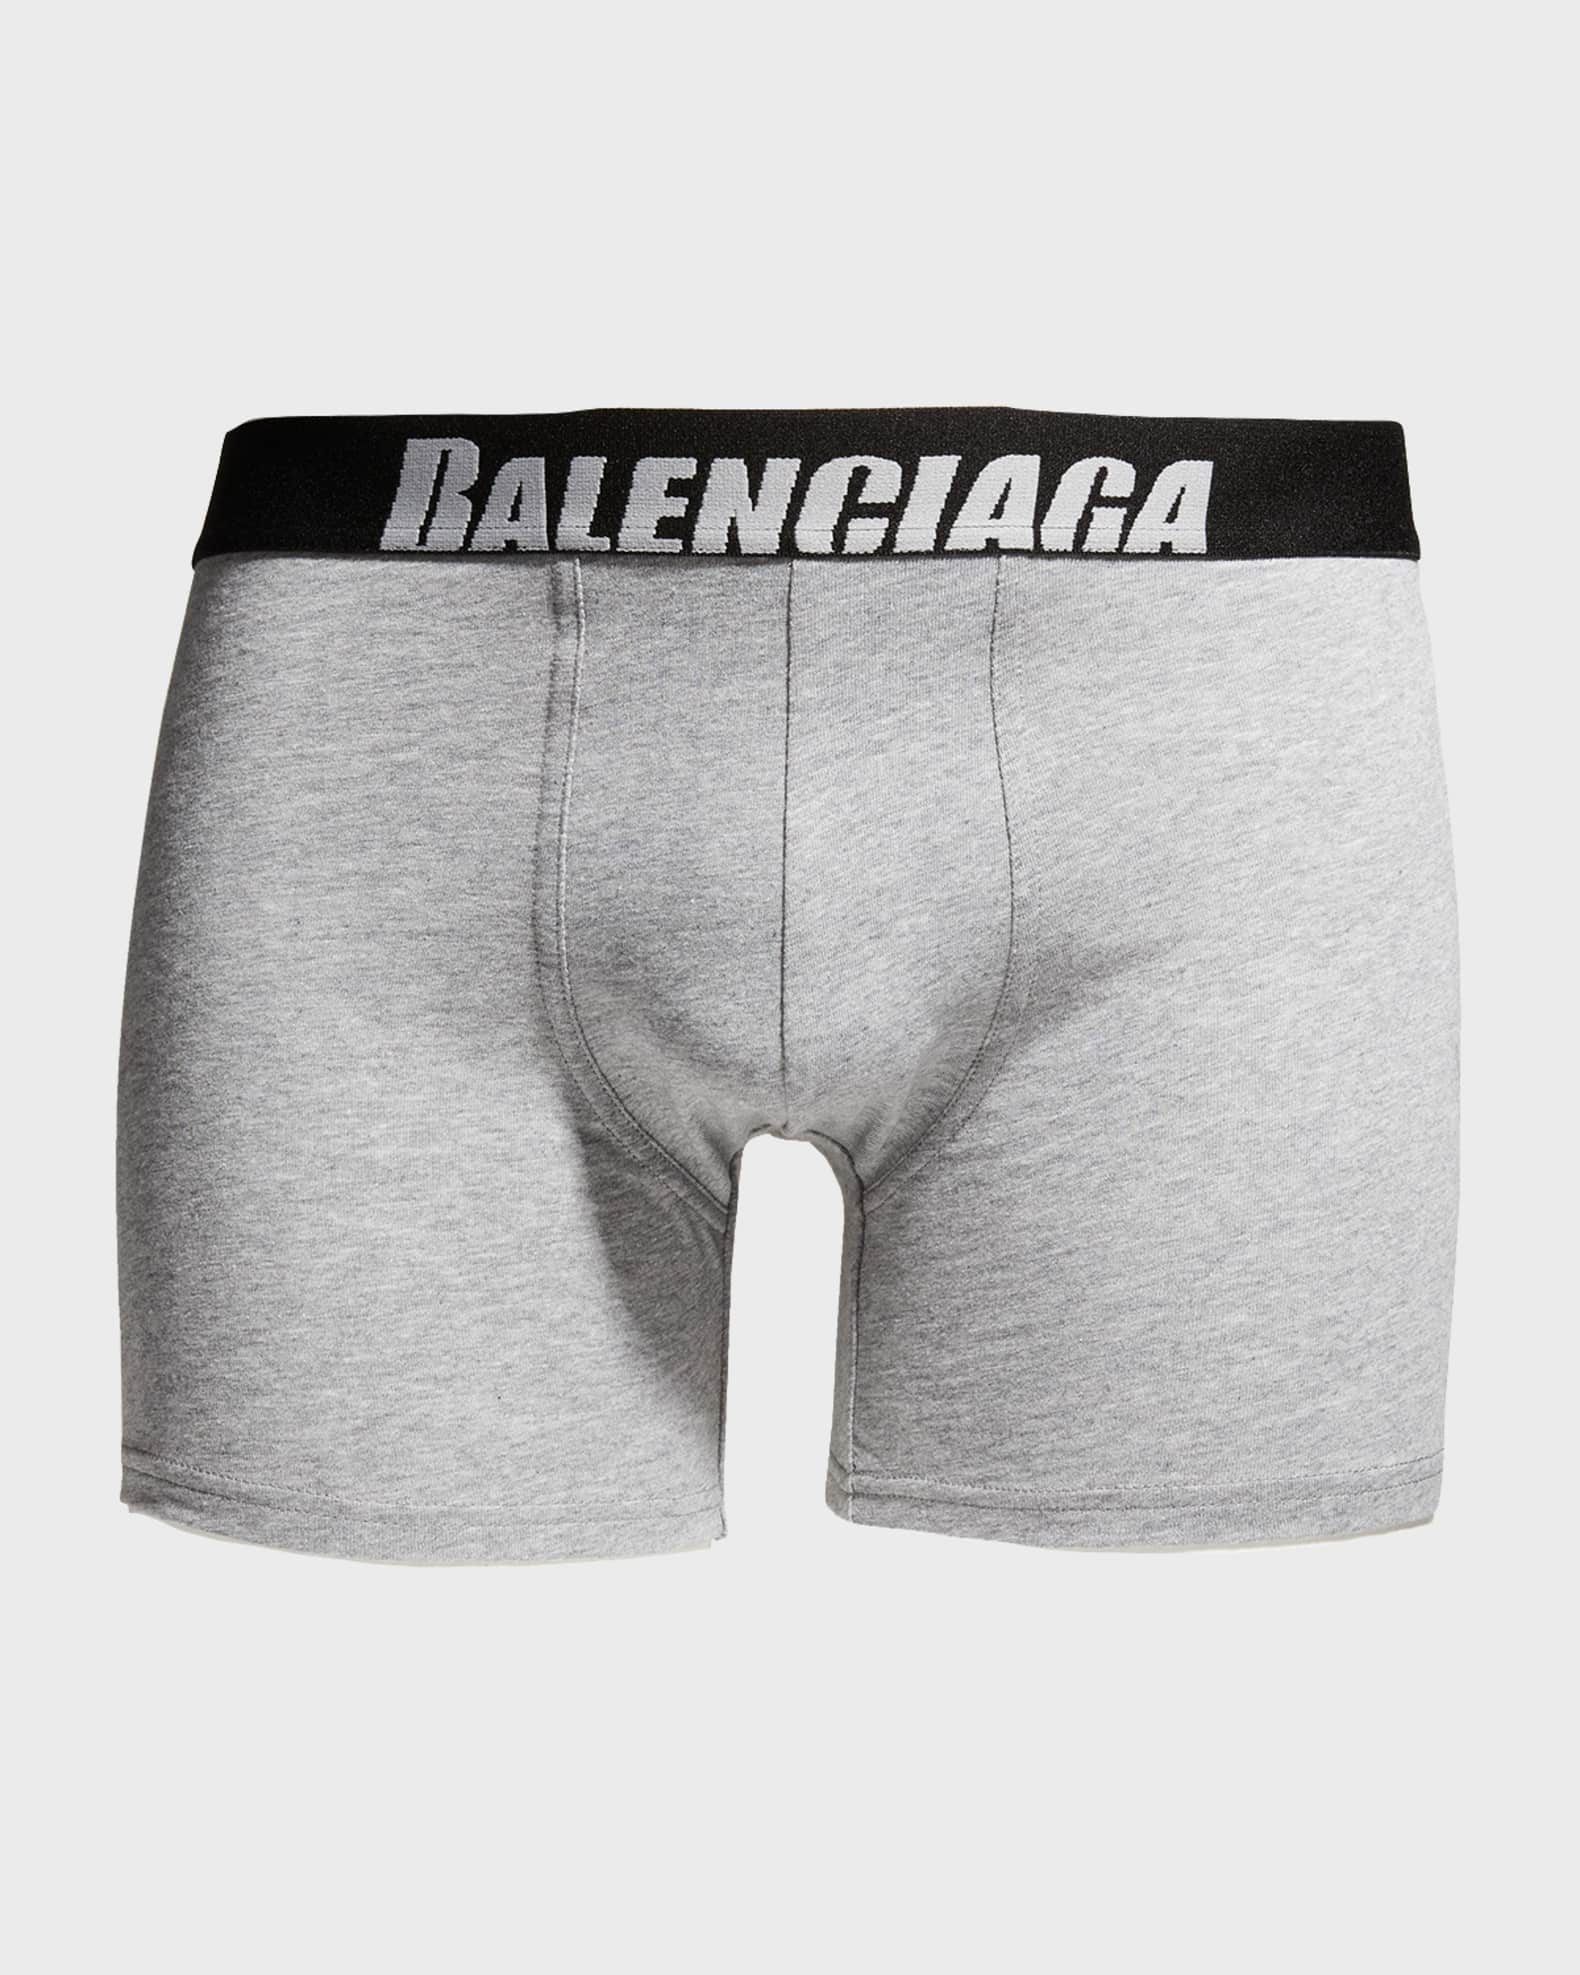 BALENCIAGA, White Men's Boxer